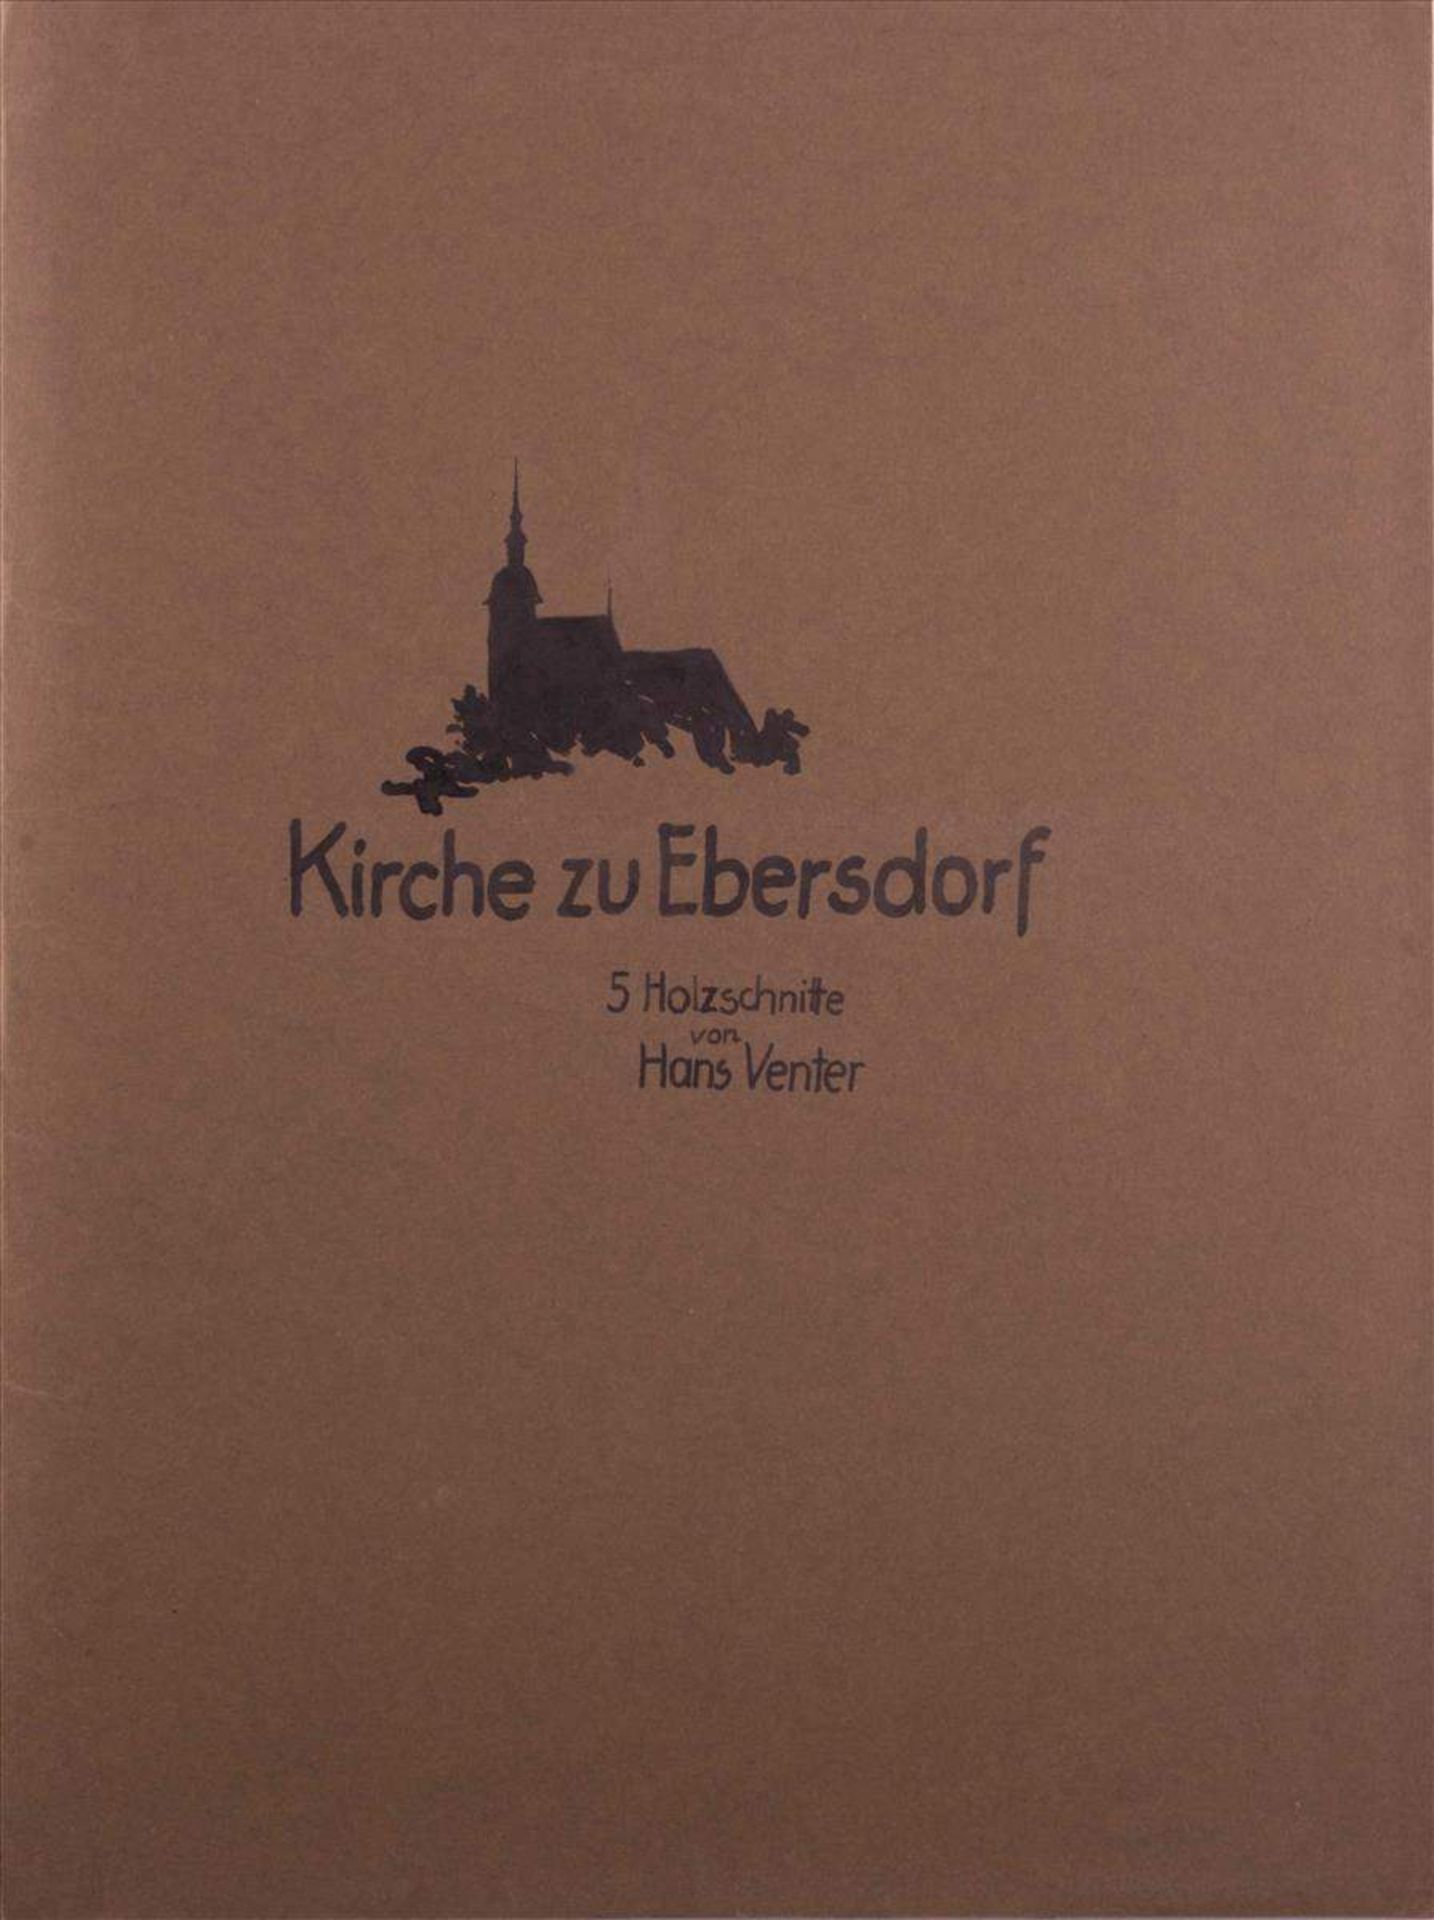 Hans VENTER (XIX)"Mappe Kirche zu Ebersdorf"(5)
Grafik-Multiple, Holzschnitt, 5 Stück,  je 30 cm x